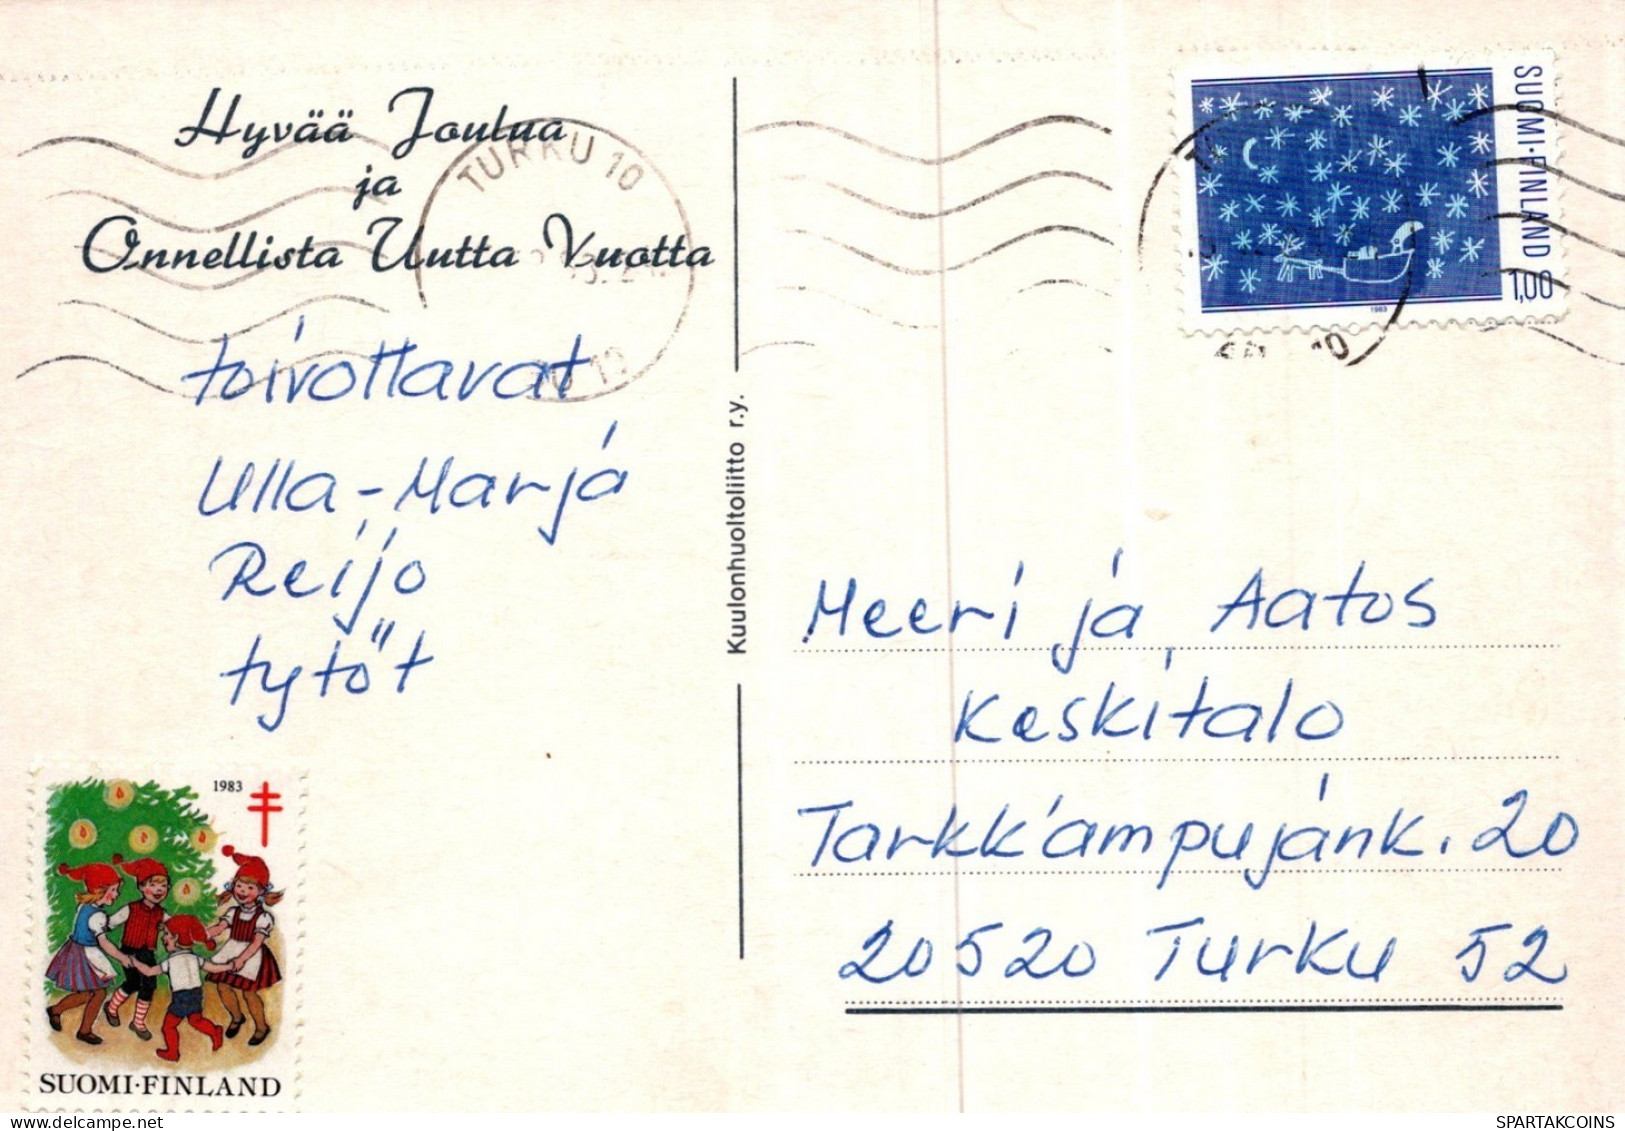 PÈRE NOËL Animaux NOËL Fêtes Voeux Vintage Carte Postale CPSM #PAK993.A - Santa Claus